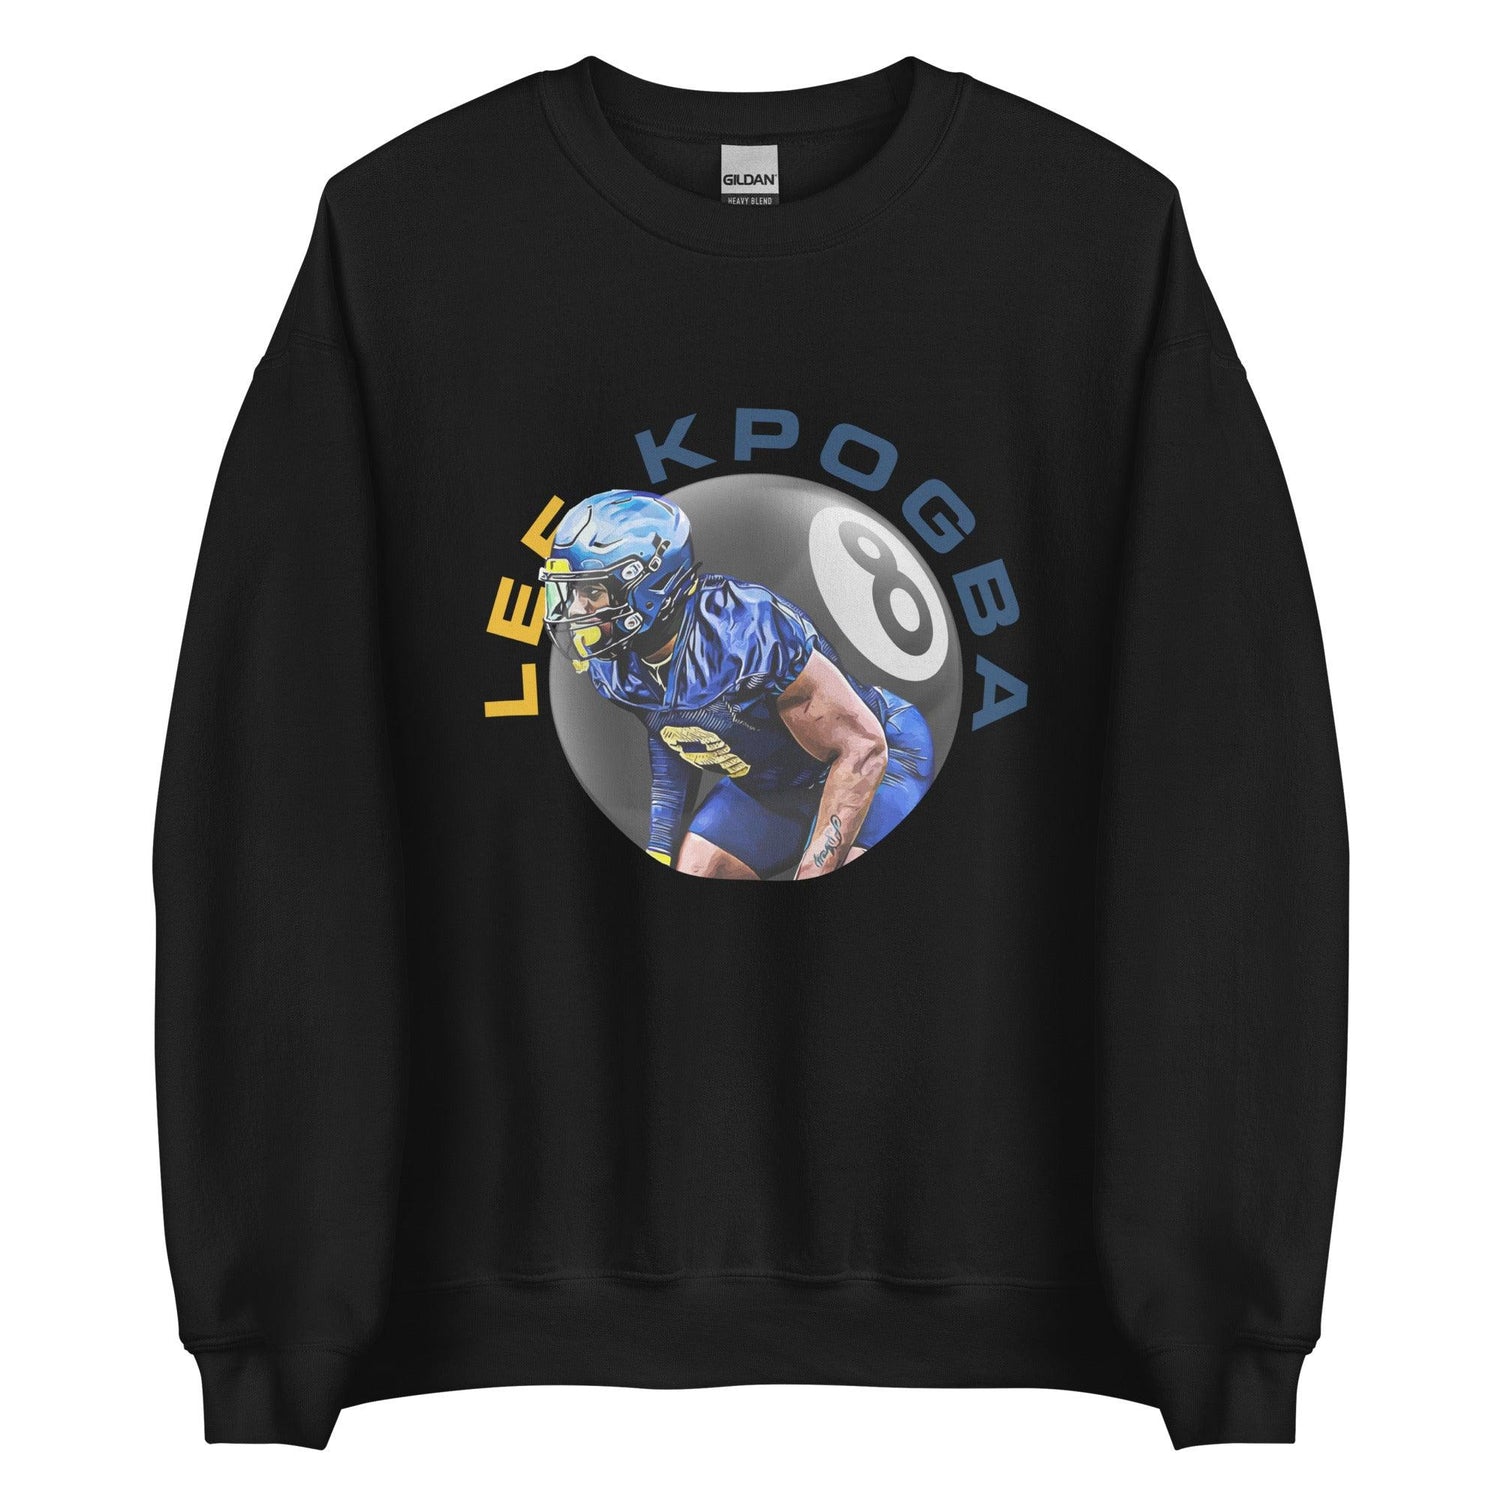 Lee Kpogba "8 Ball" Sweatshirt - Fan Arch